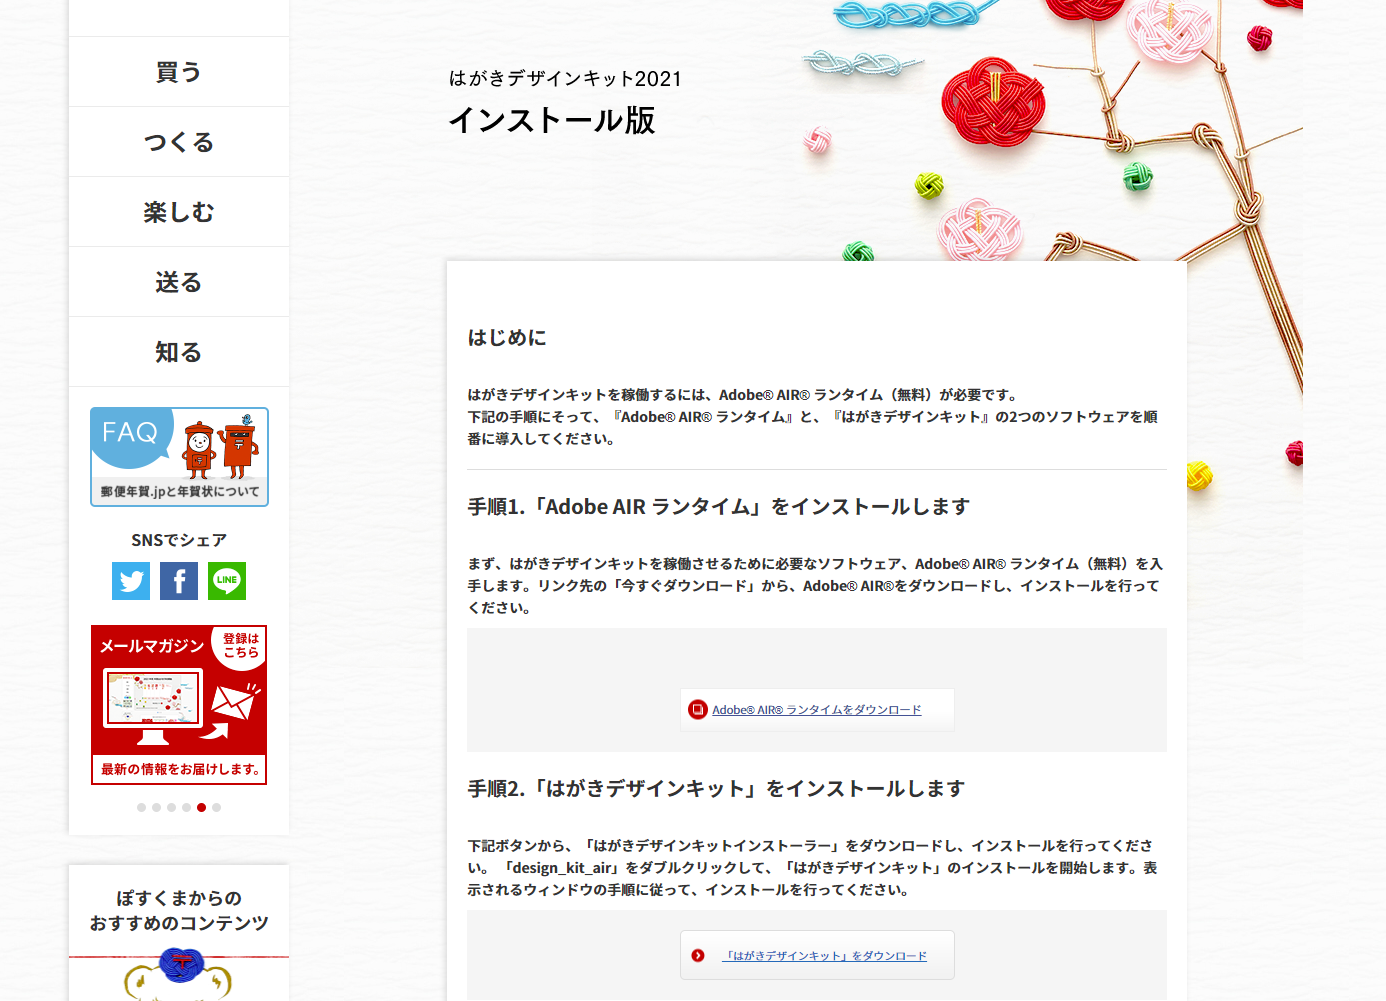 日本郵便が無償提供する年賀状ソフト はがきデザインキット21 がすごい Shopdd